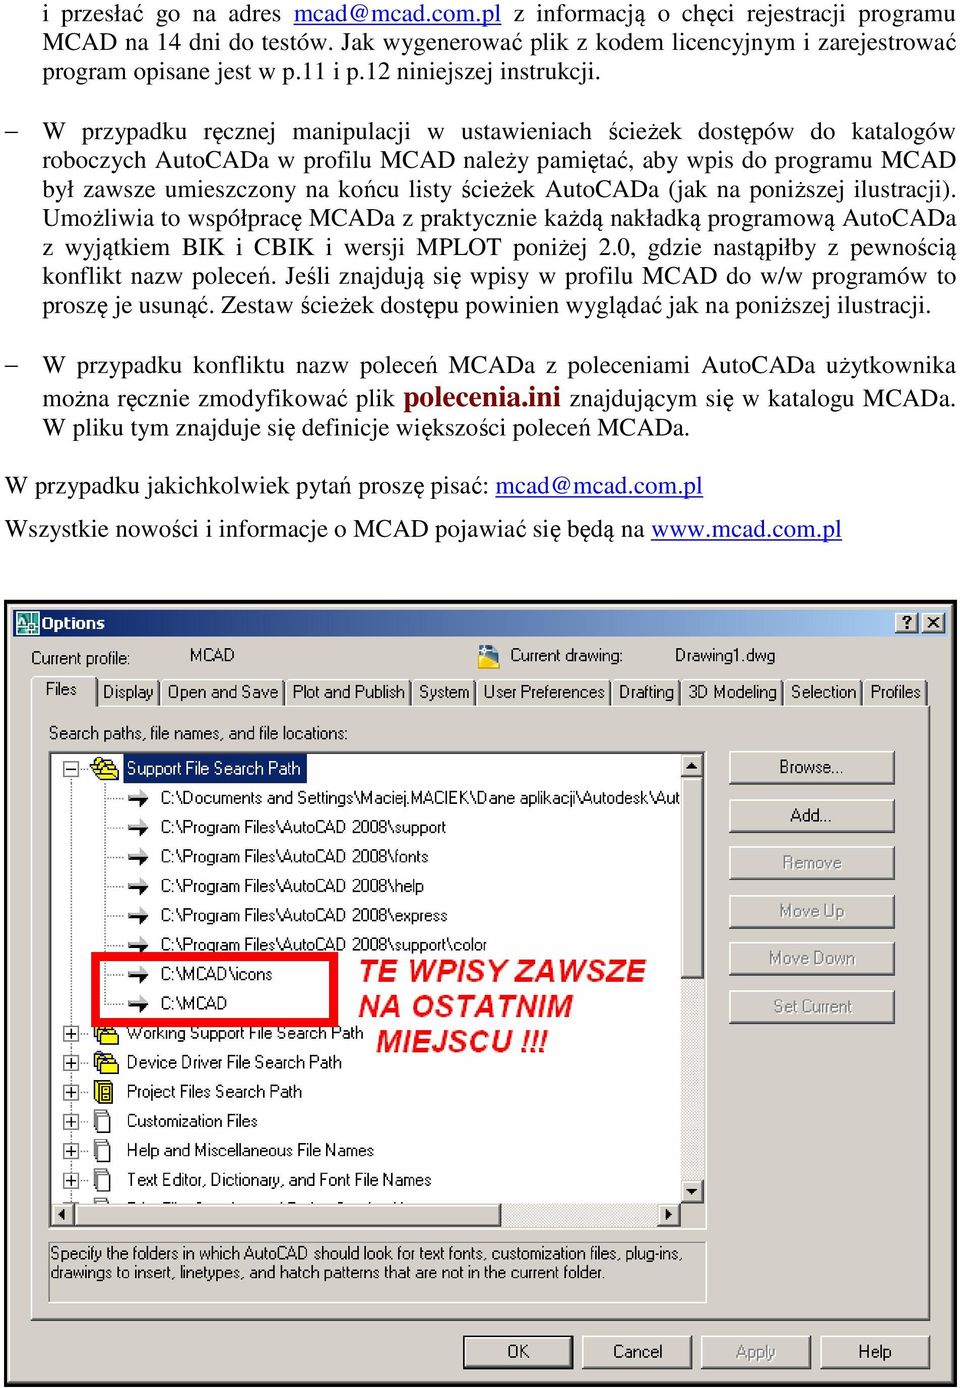 W przypadku ręcznej manipulacji w ustawieniach ścieżek dostępów do katalogów roboczych AutoCADa w profilu MCAD należy pamiętać, aby wpis do programu MCAD był zawsze umieszczony na końcu listy ścieżek